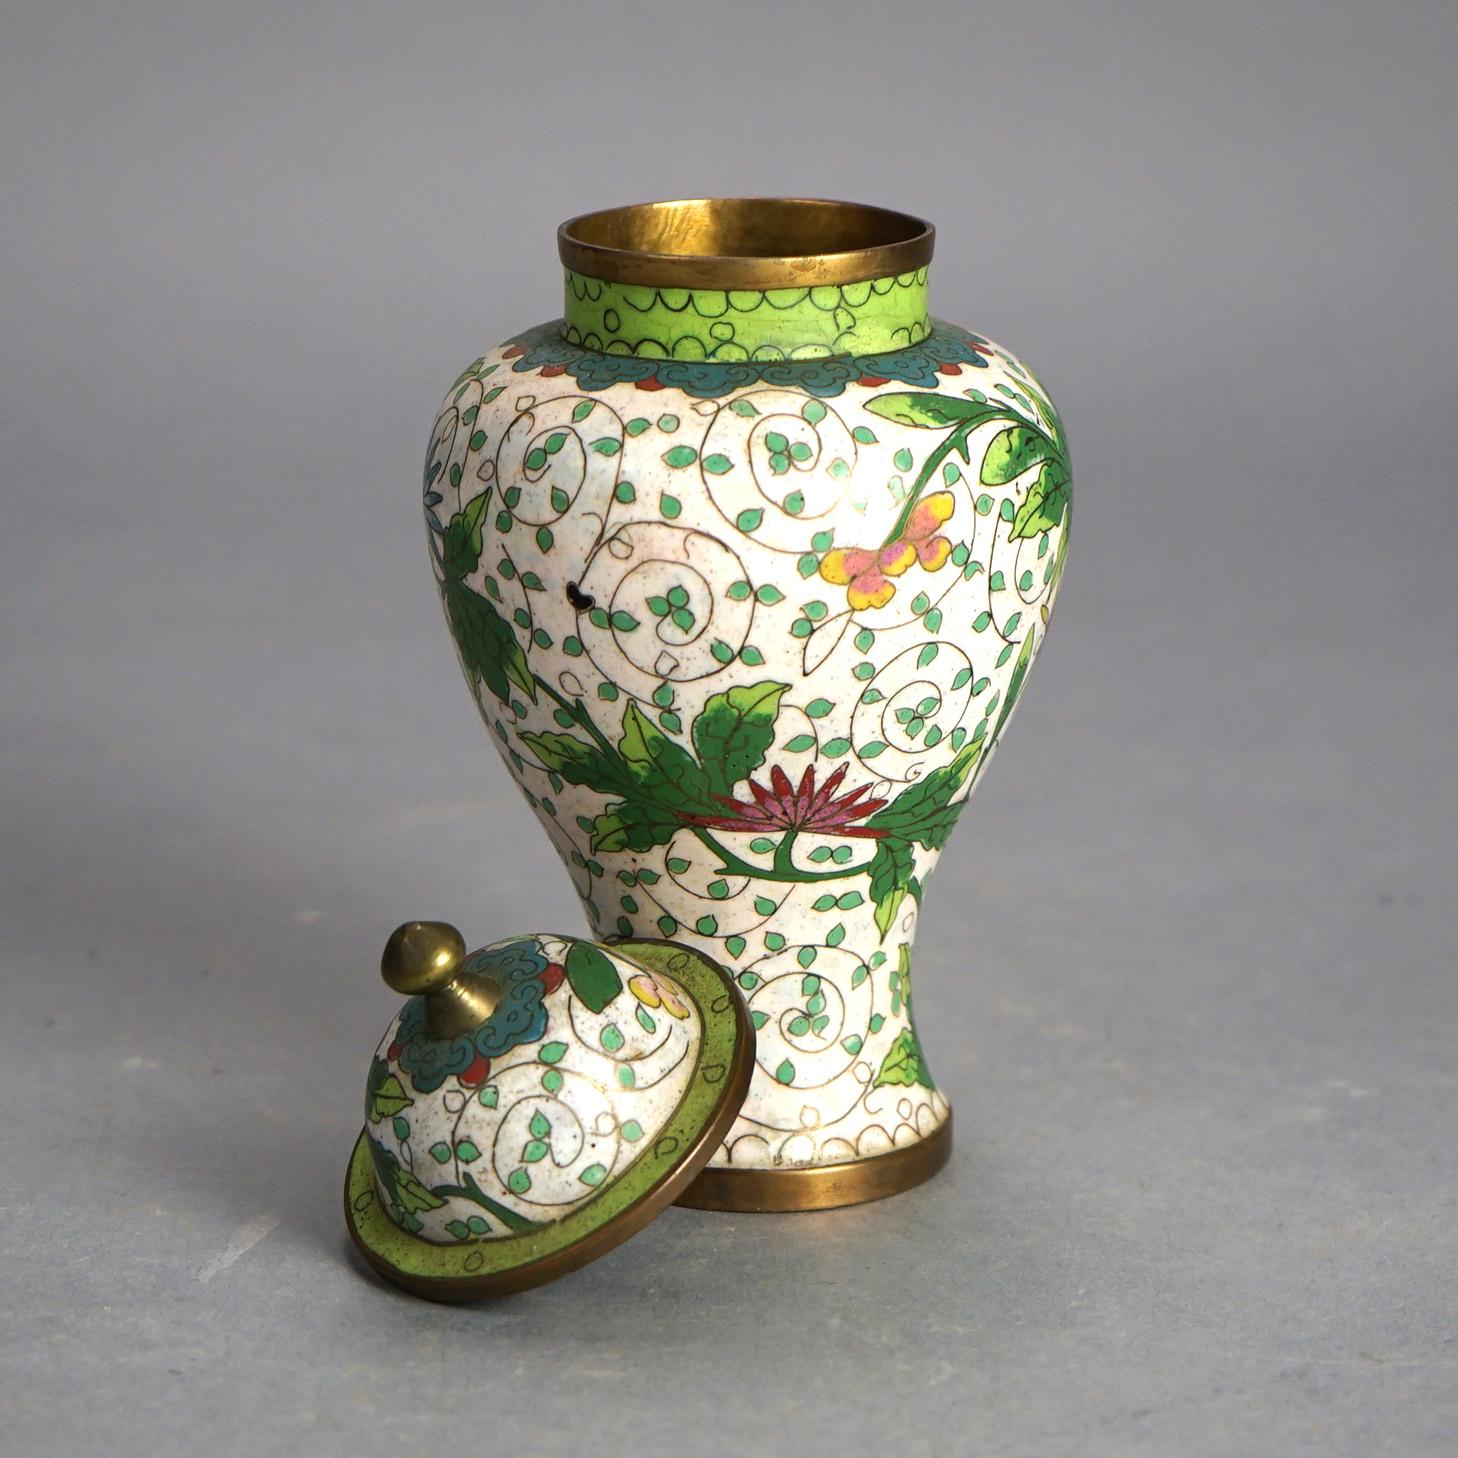 Urne à couvercle en bronze cloisonné émaillé avec des fleurs, Chine ancienne, vers 1920

Mesures - 7 